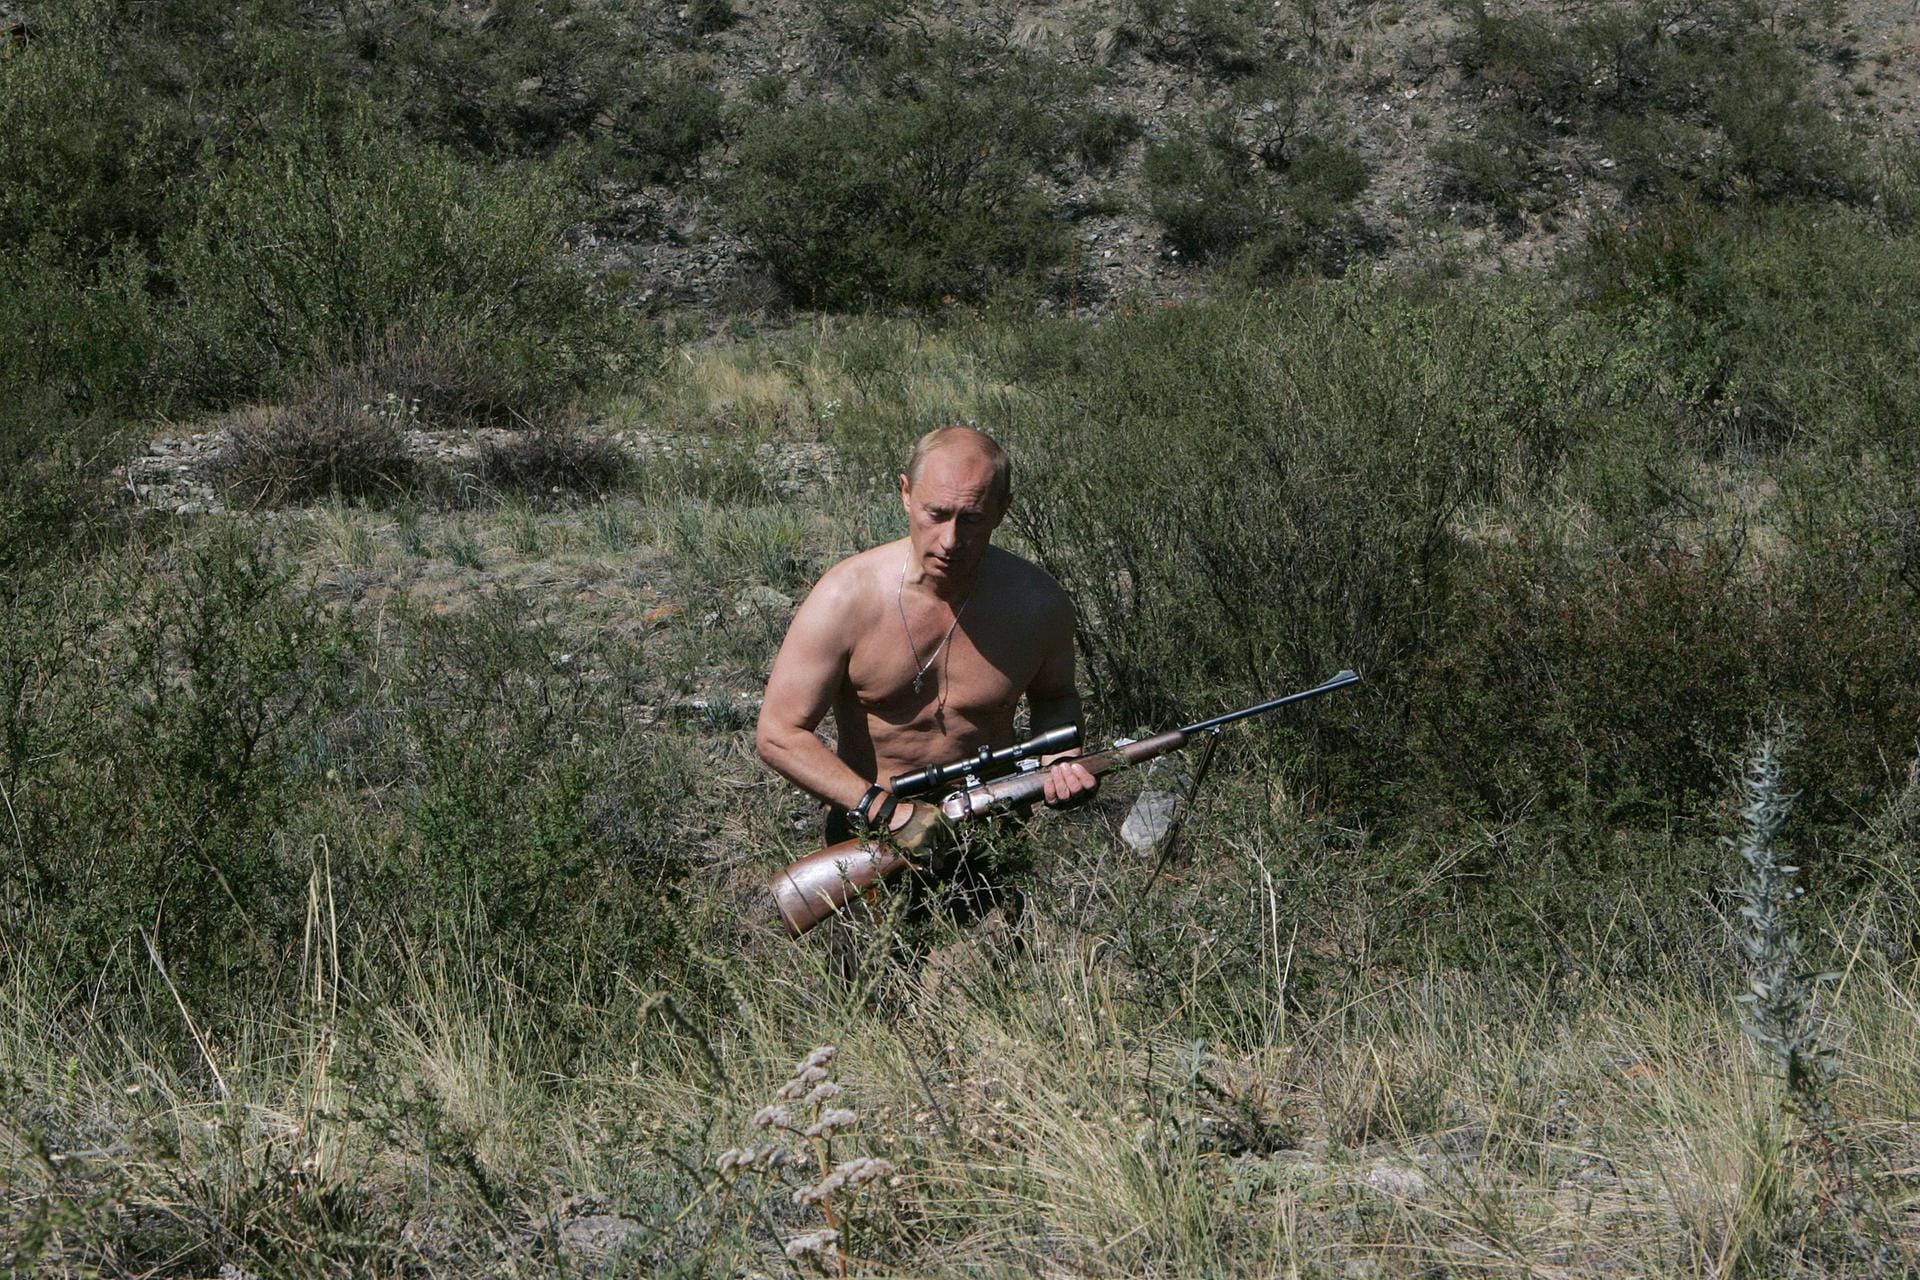 Überhaupt ein sehr bodenständiger Typ, dieser Putin. Geht jagen in der Taiga...